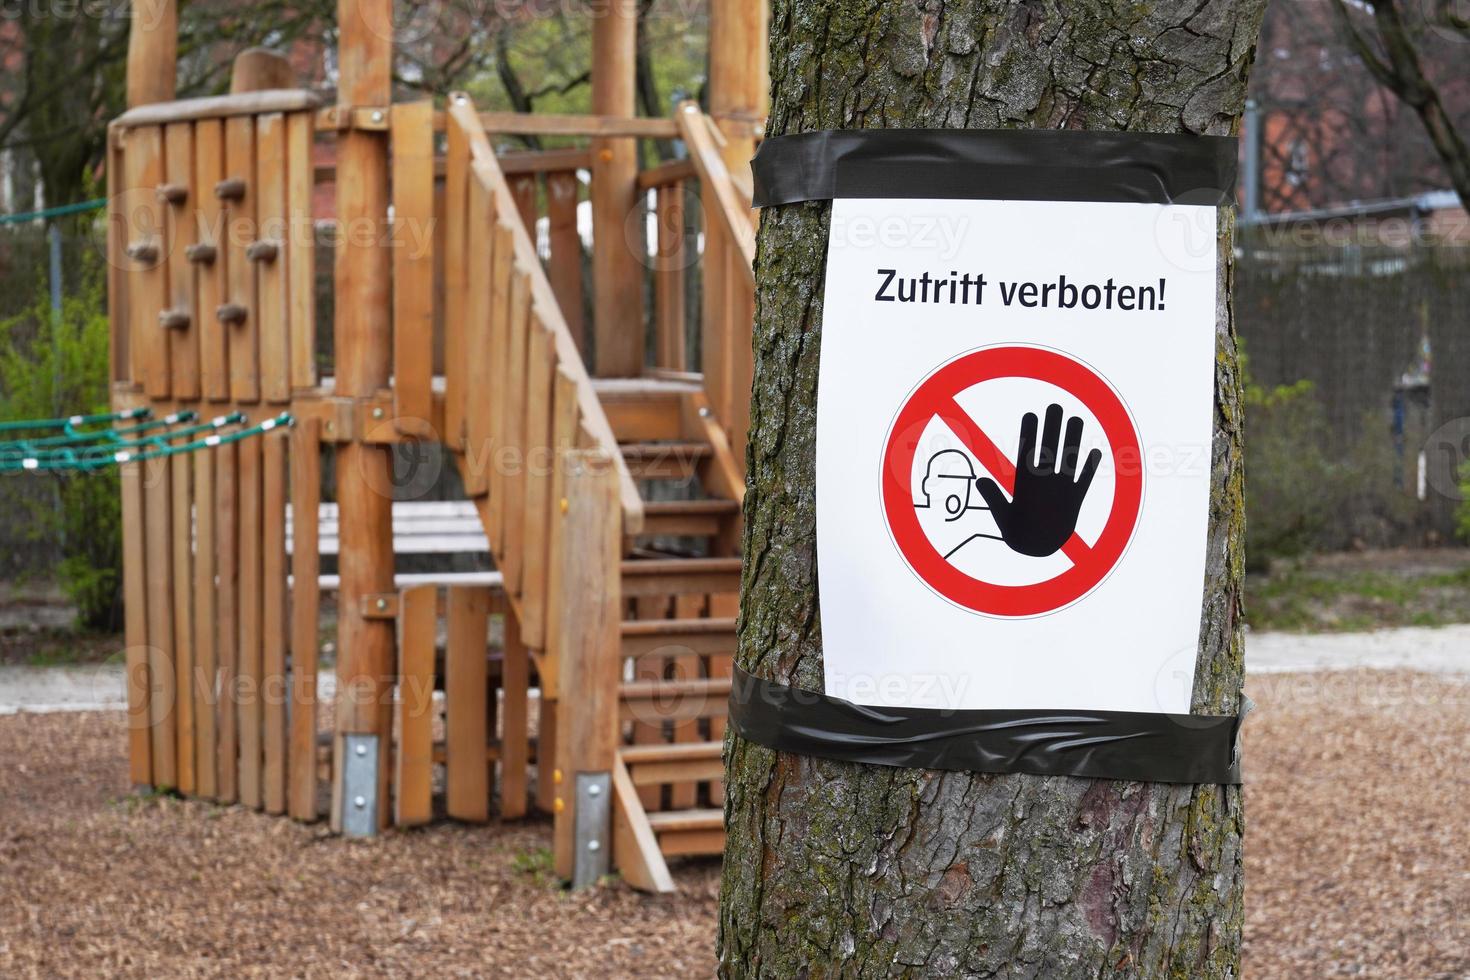 gesloten speeltuin met zutritt verboten-bord - wat betekent dat er geen toegang is in het Duits foto